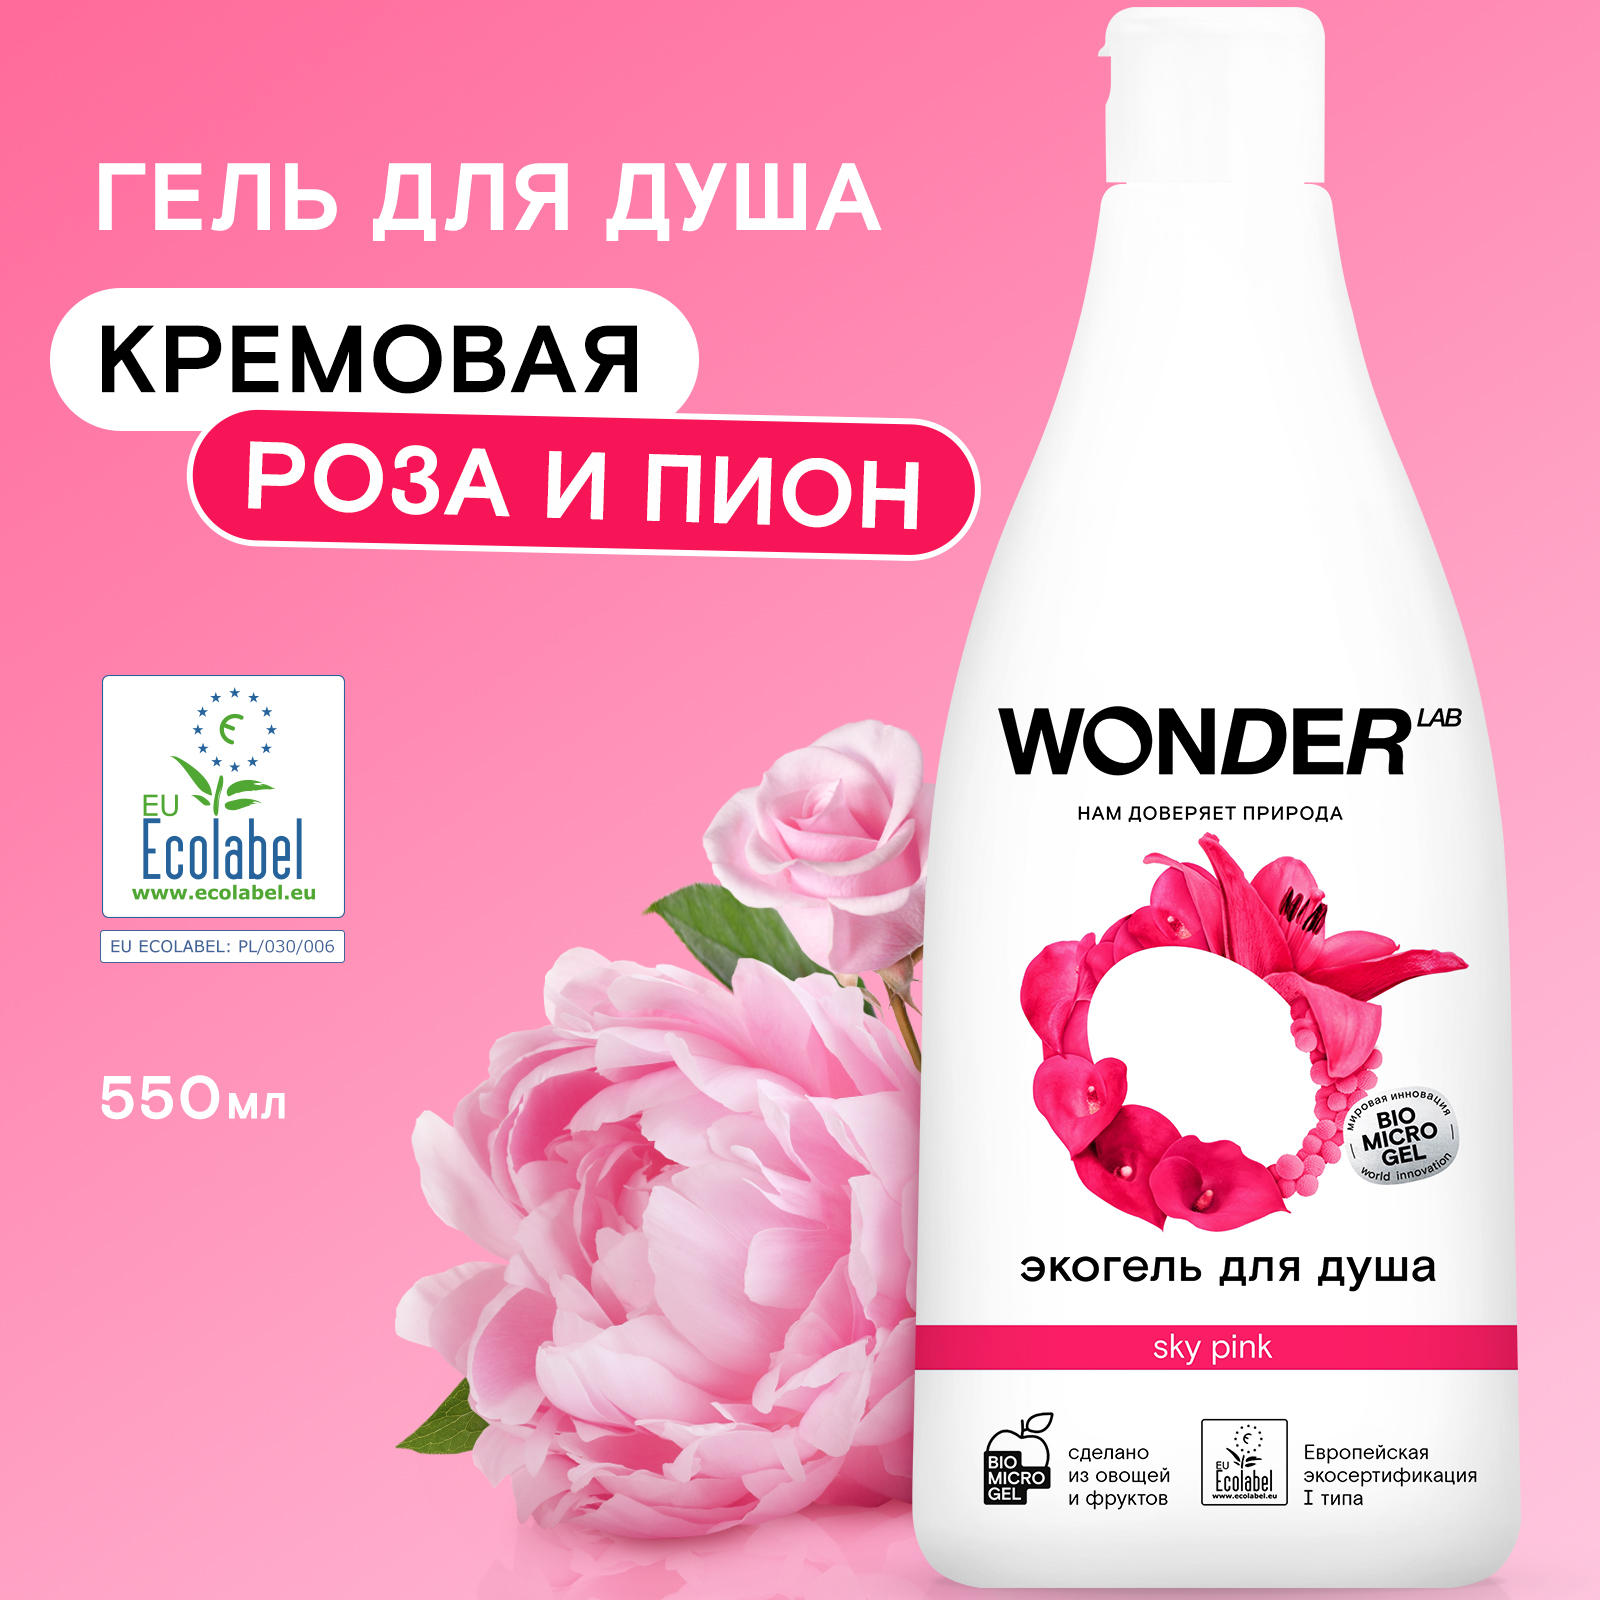 Экогель для душа Wonder Lab Sky Pink, 550 мл wonder lab детский экогель для душа 2 в 1 с ароматом озорной дыни 550